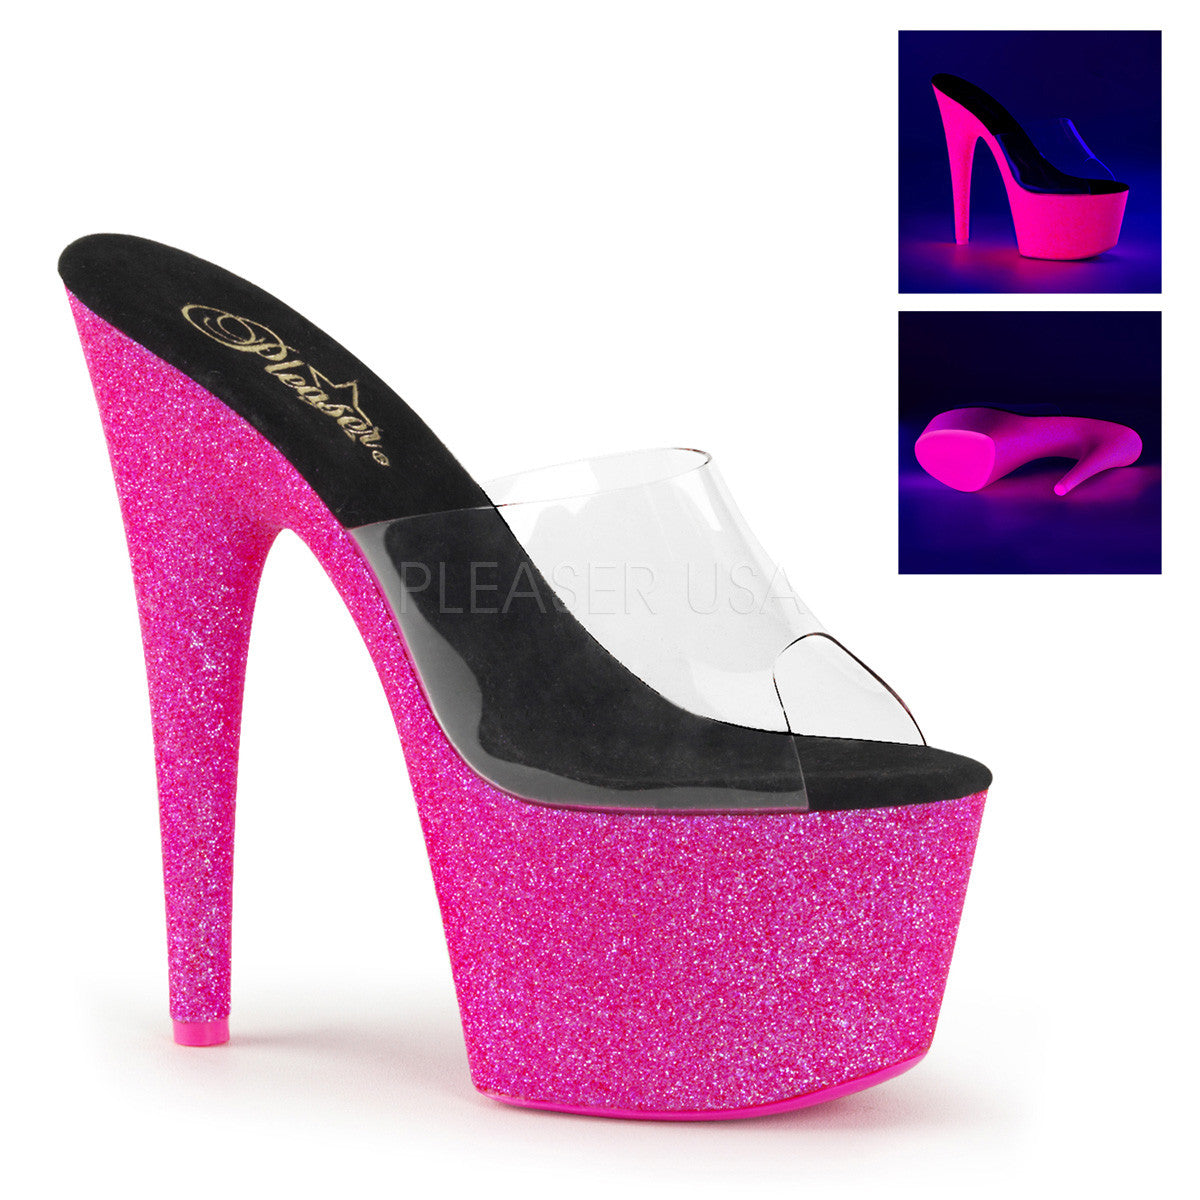 Pleaser ADORE-701UVG Neon Hot Pink Glitter Platform Slides - Shoecup.com - 1